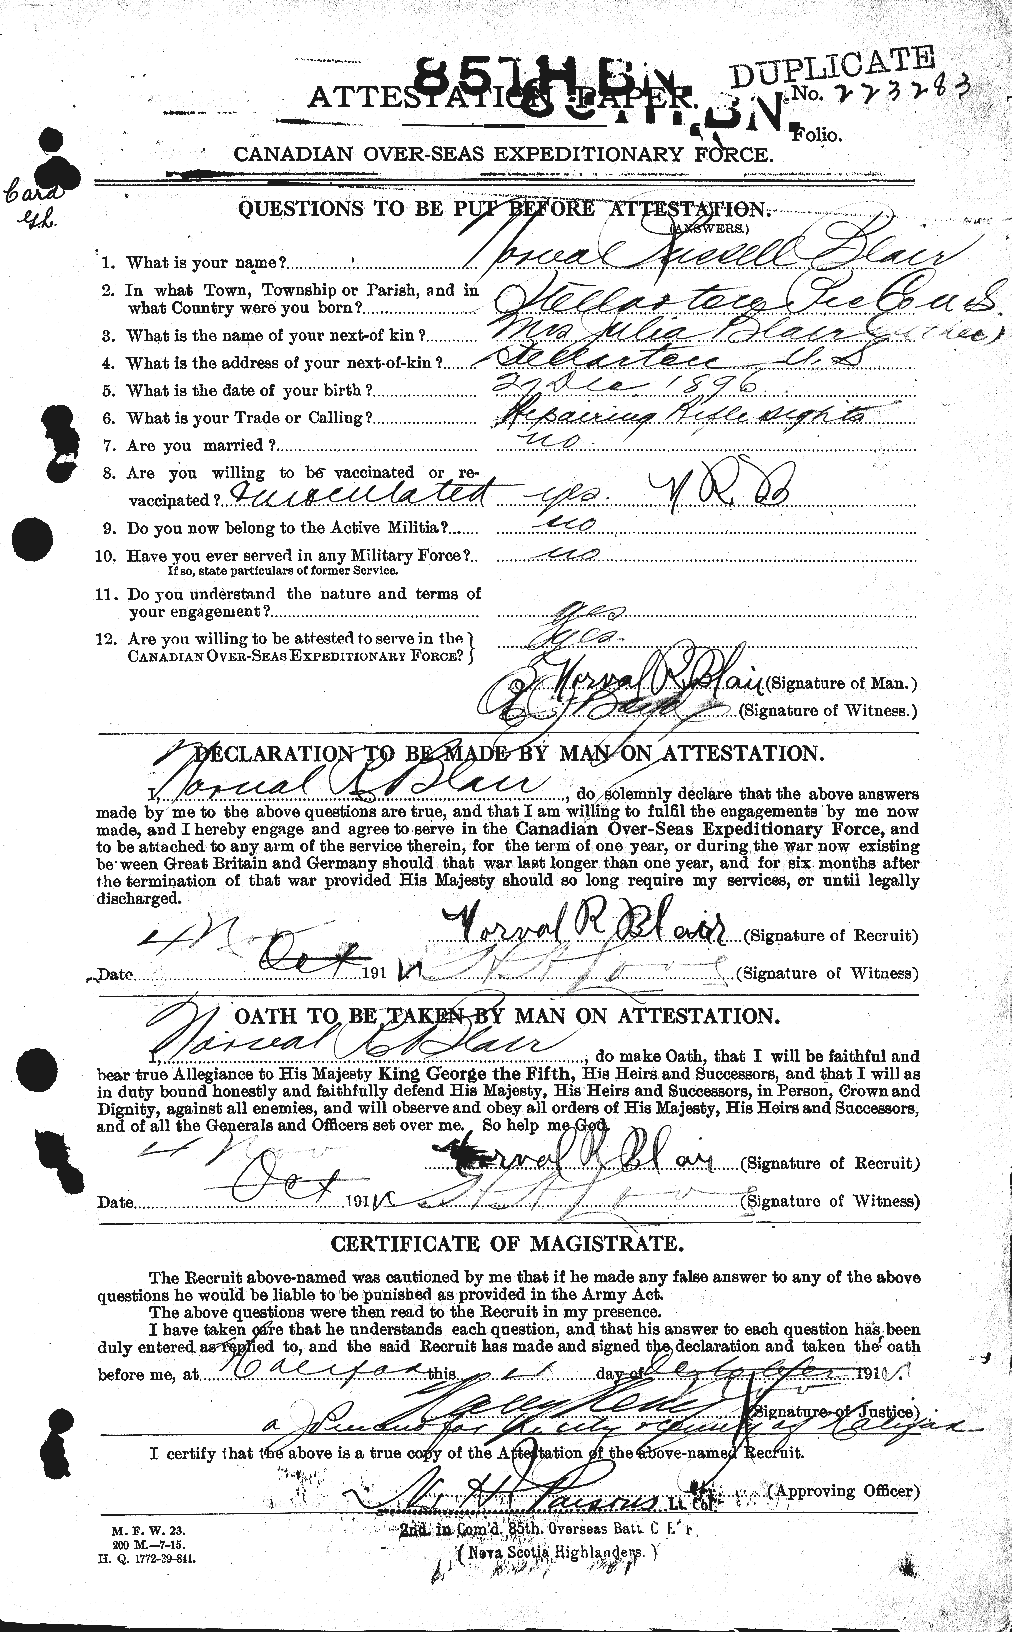 Dossiers du Personnel de la Première Guerre mondiale - CEC 243120a